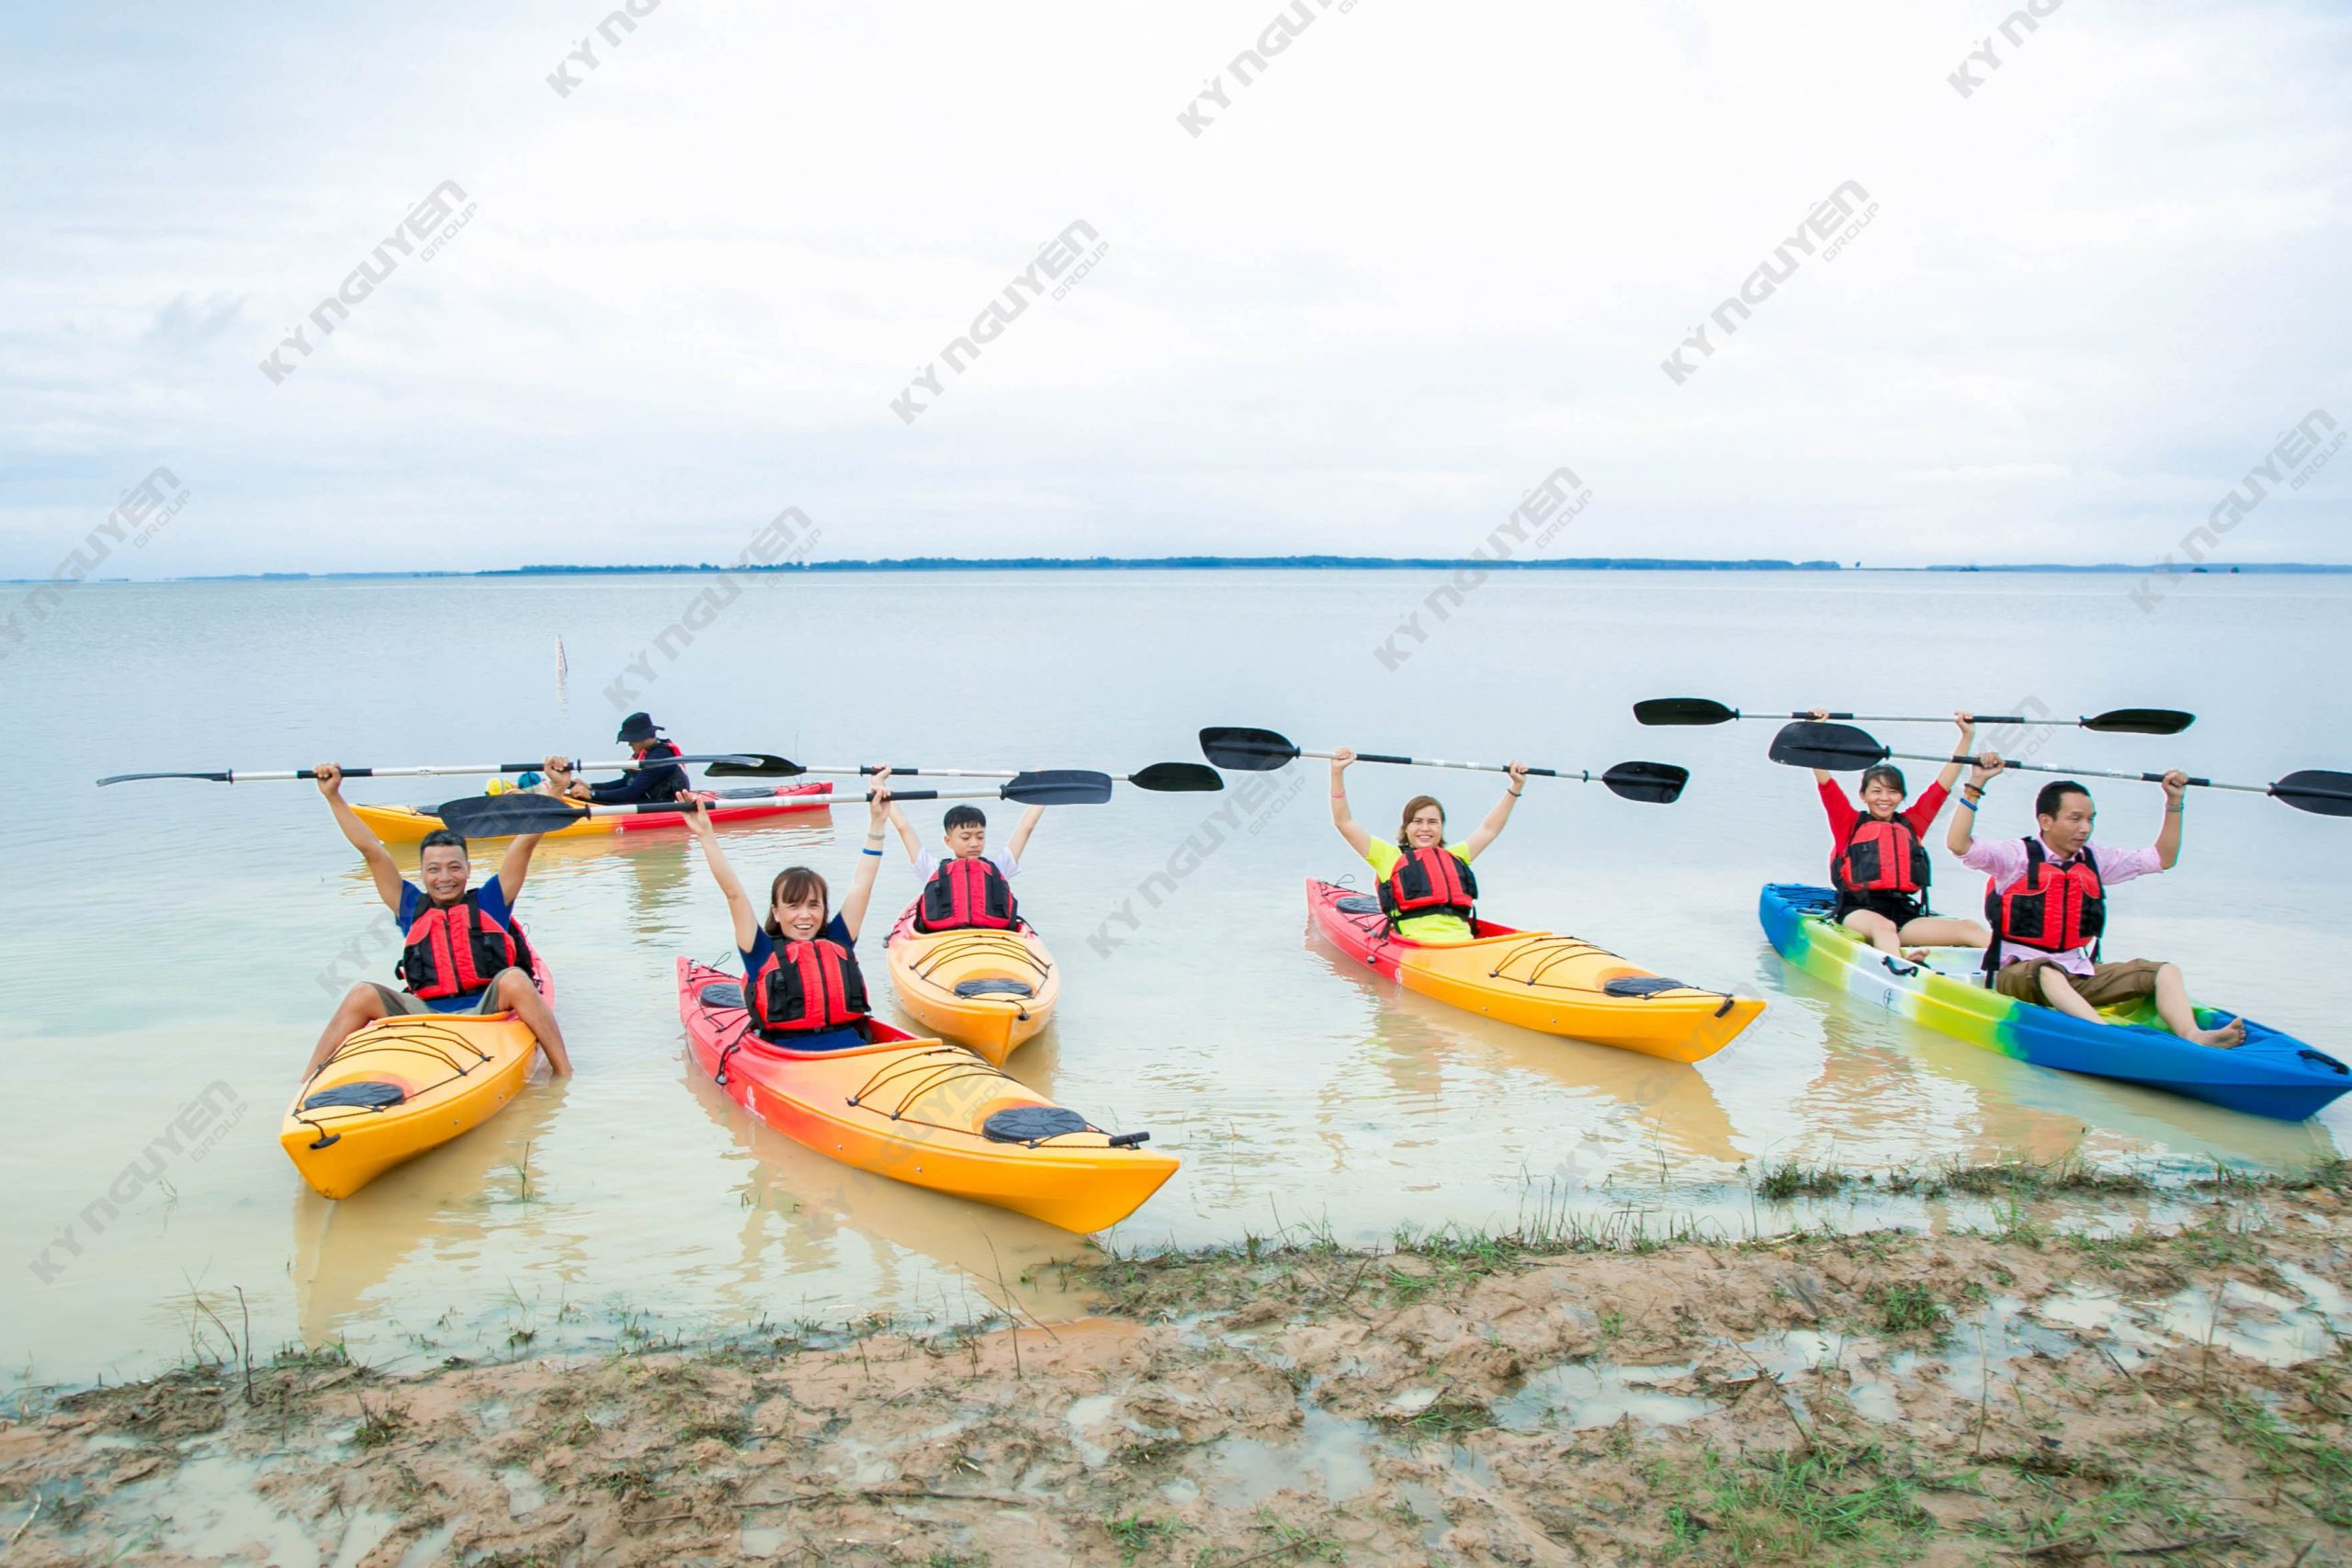 Người tham dự còn được trải nghiệm chèo thuyền Kayak khi đến với CampFest.